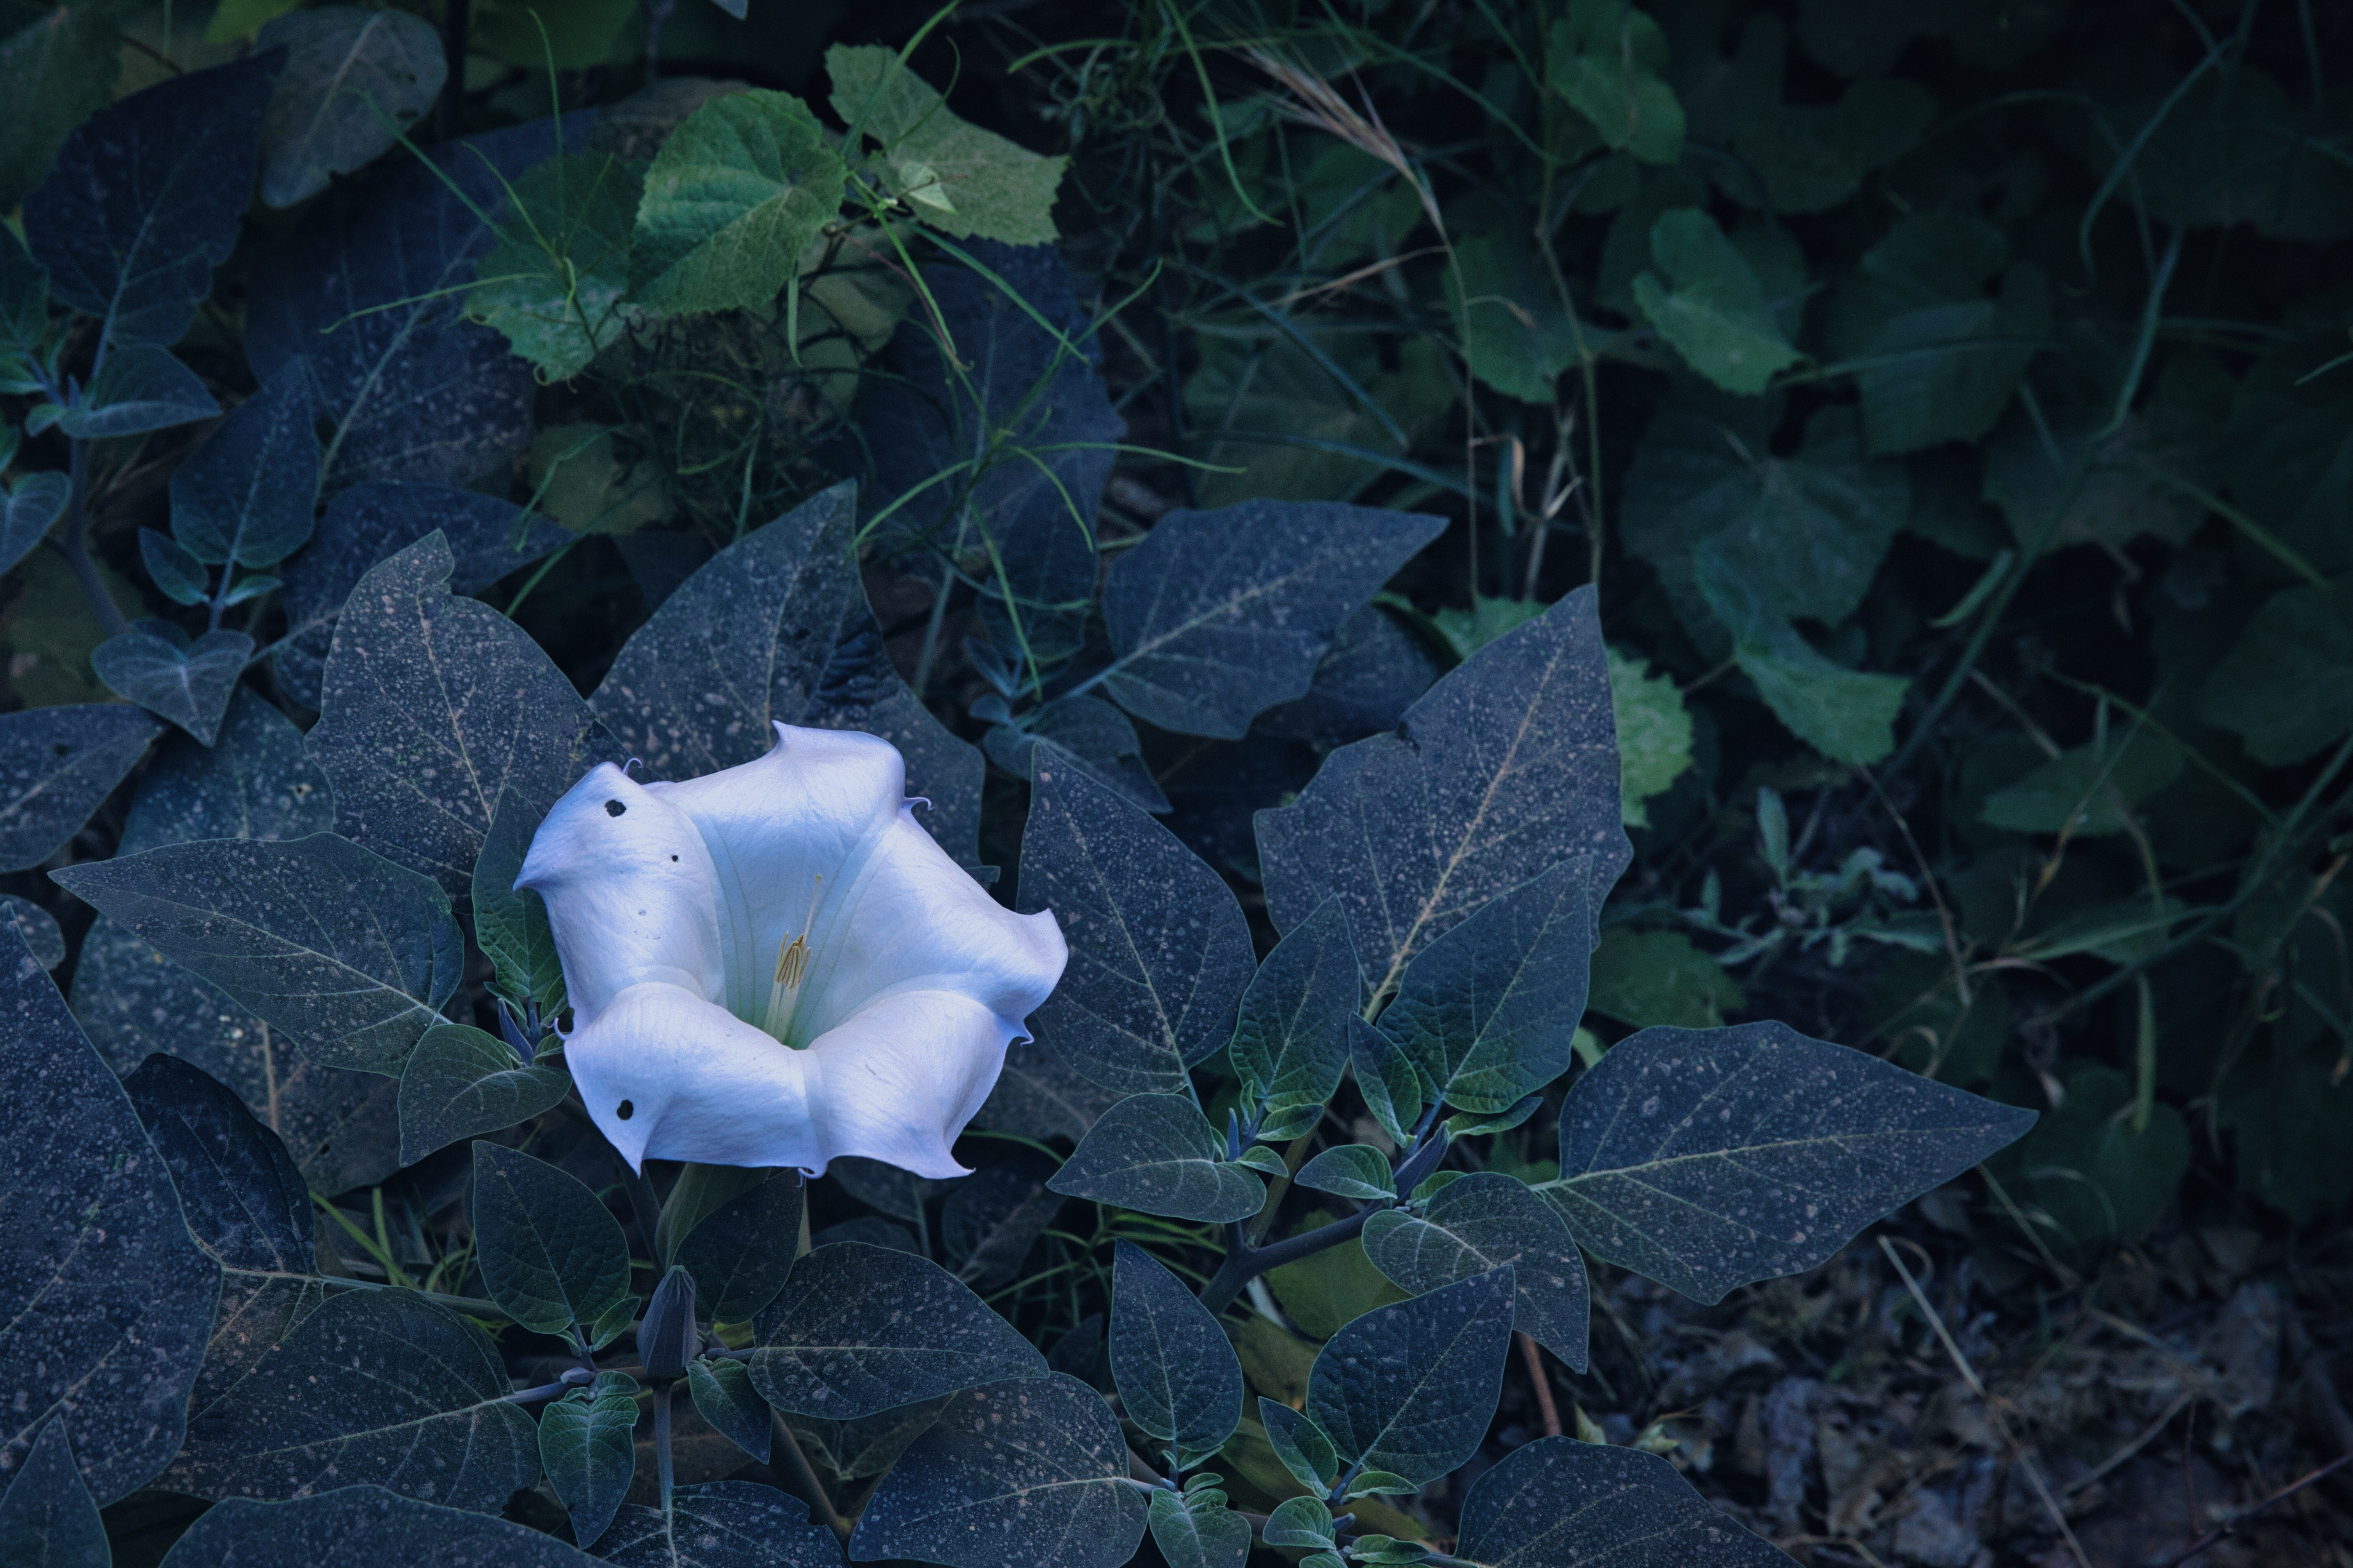 緑の葉に囲まれた朝顔みたいな白い花の写真